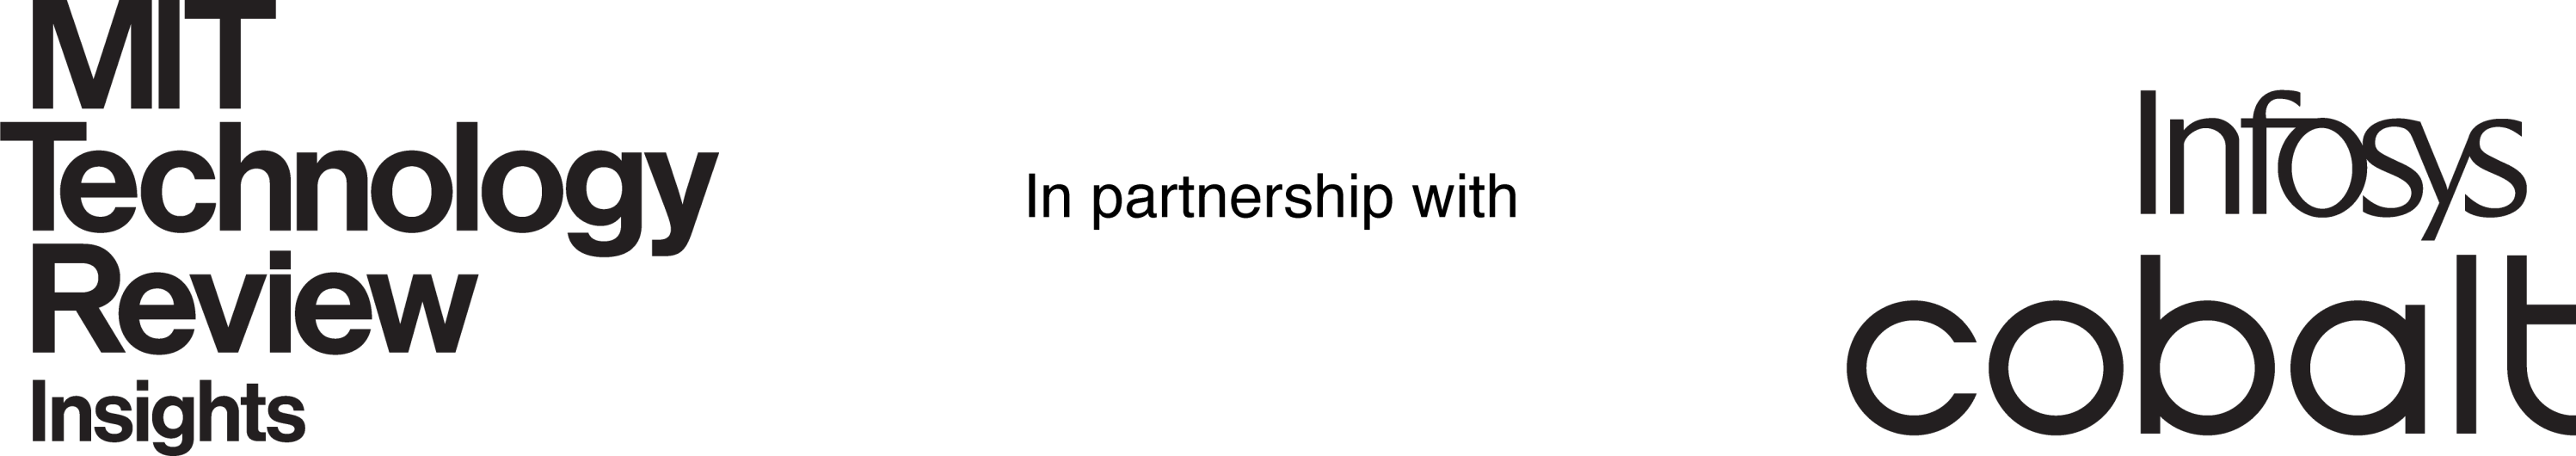 Infosys-MIT lockup logo image